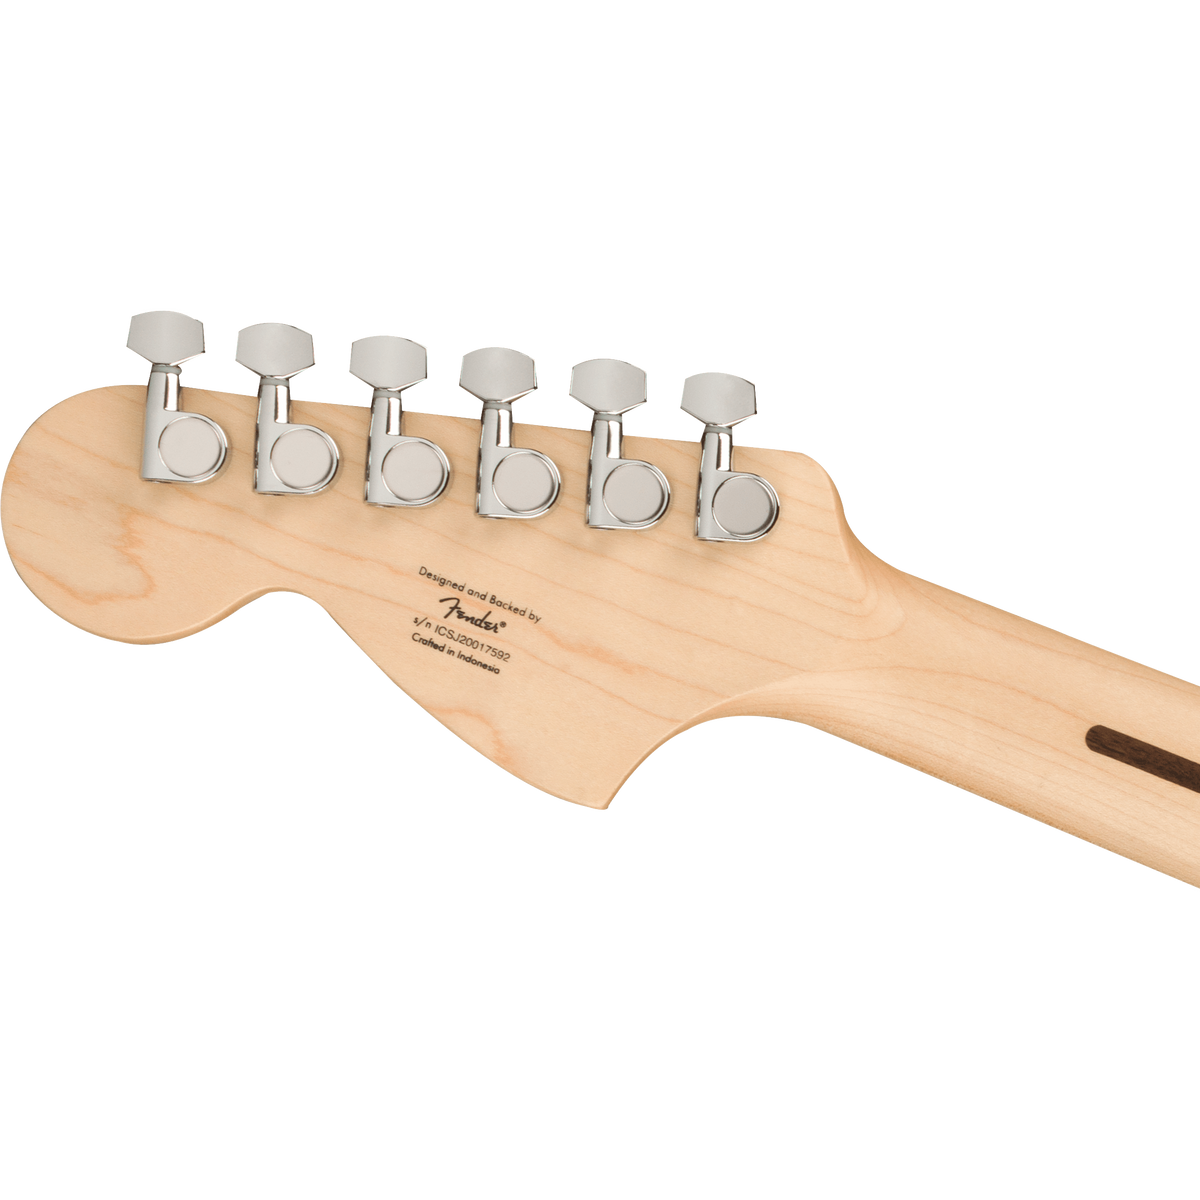 Fender Squier Stratocaster Affinity Series HSS Electric Guitar Sienna Sunburst